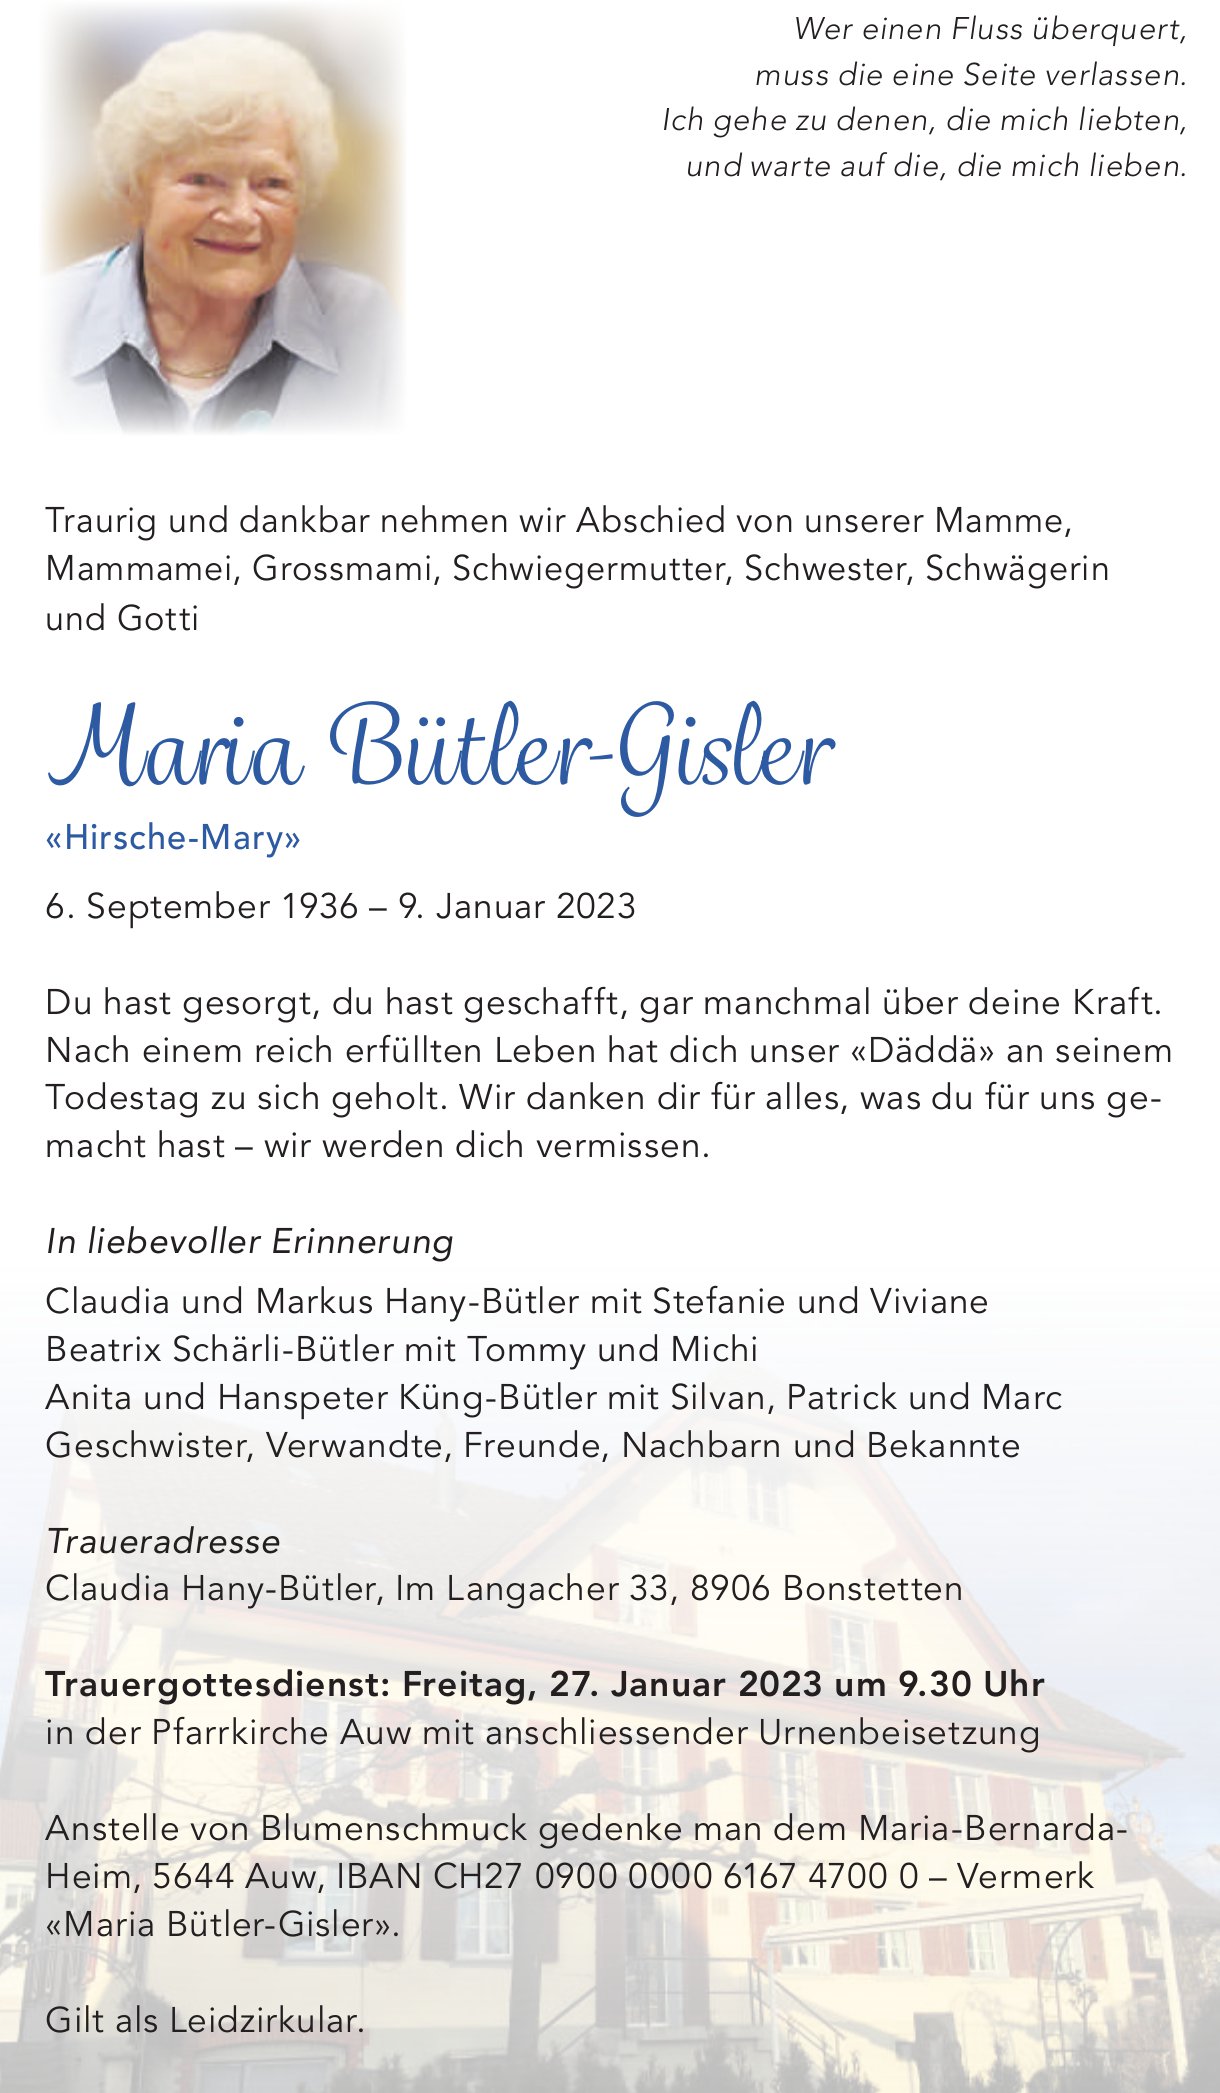 Bütler-Gisler Maria, Januar 2023 / TA